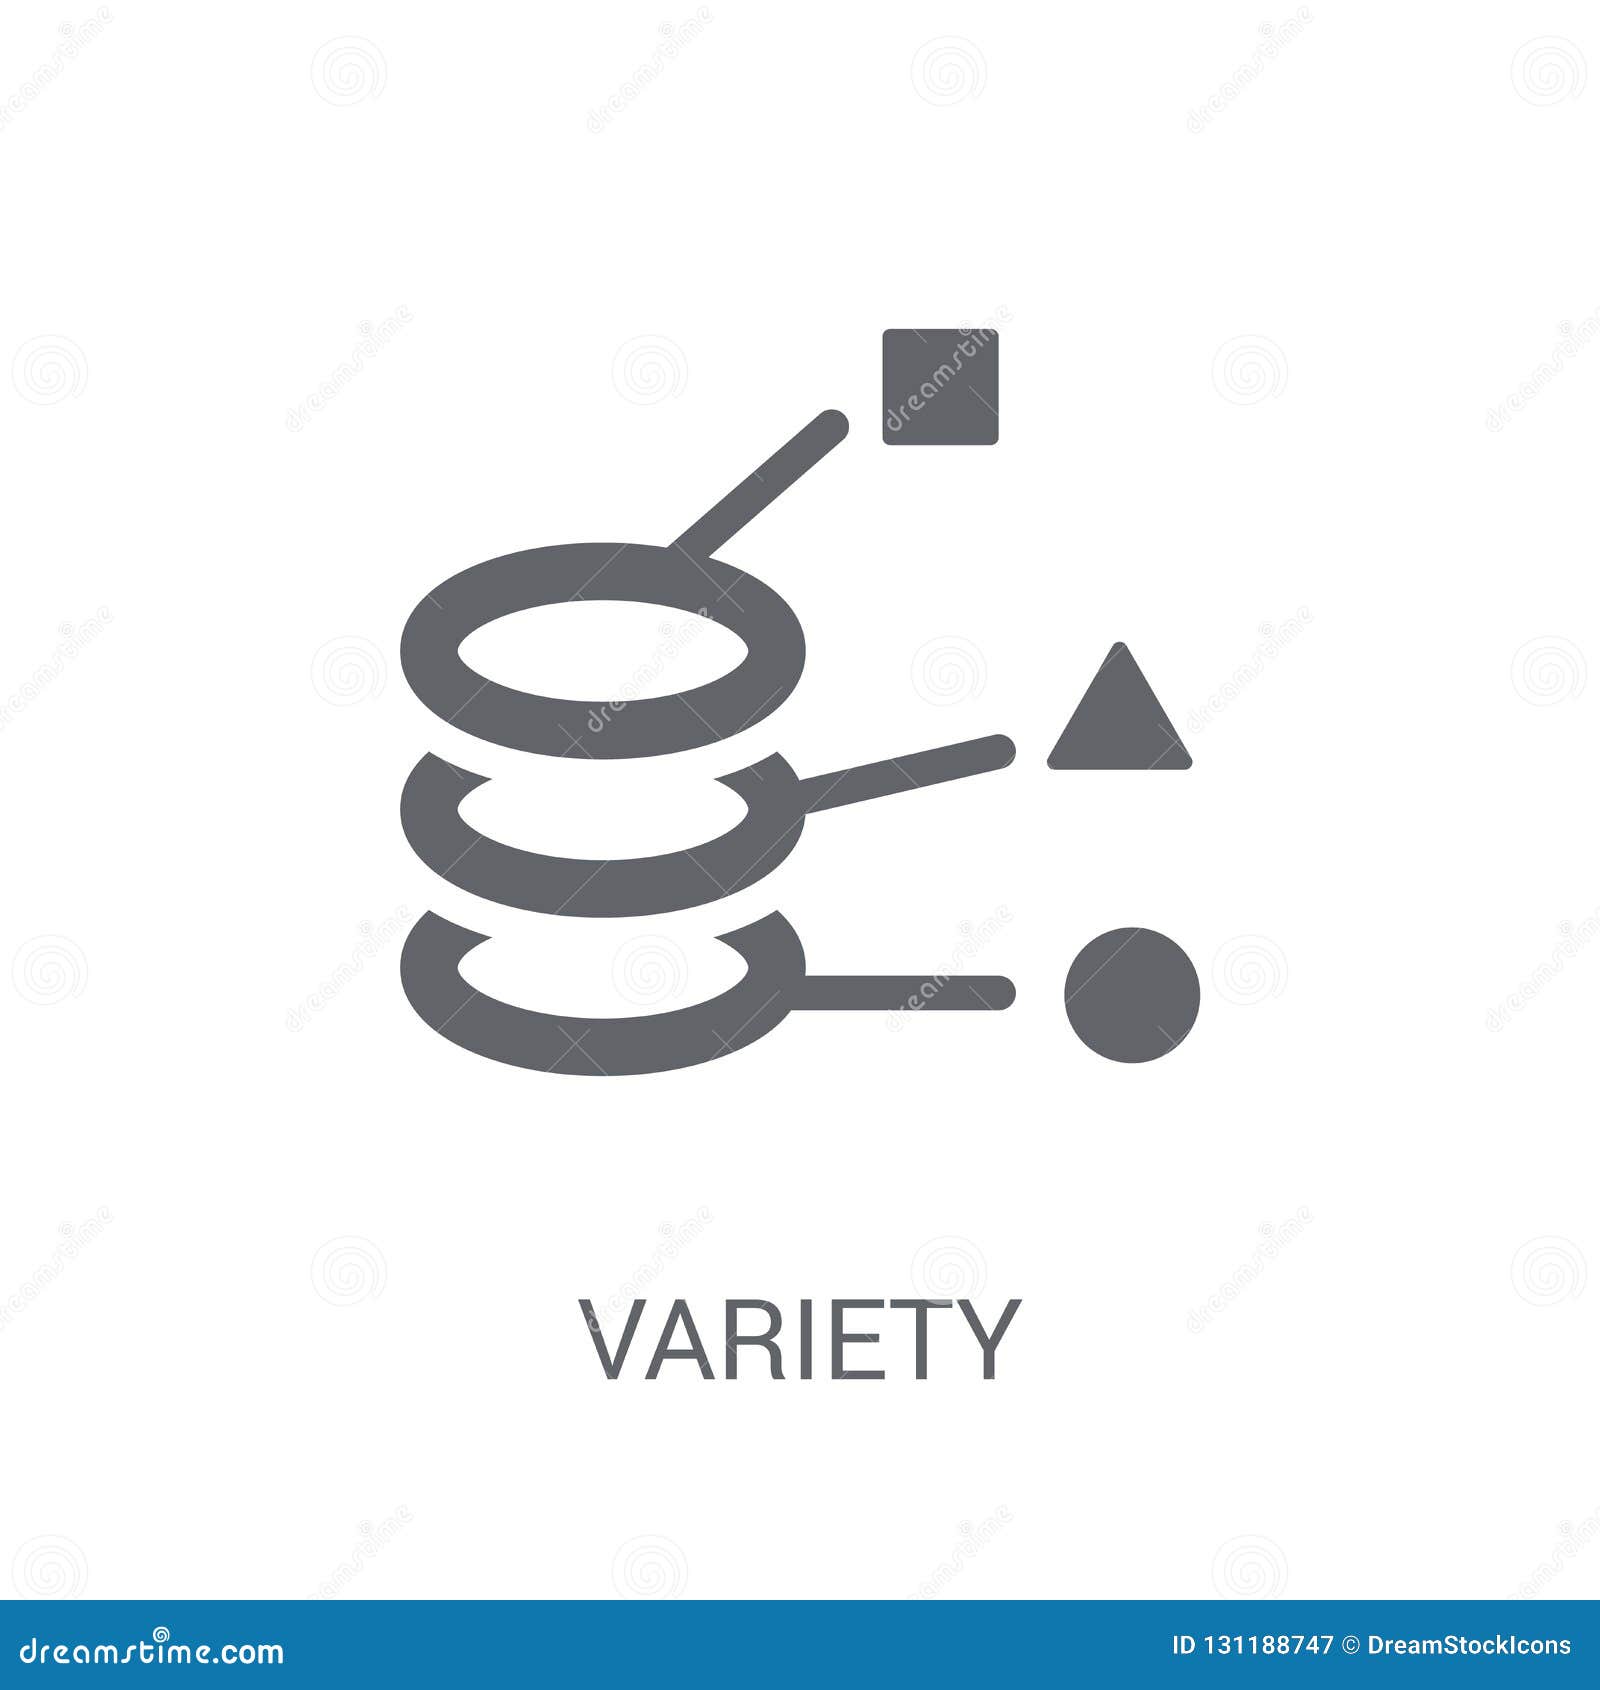 variety icon. trendy variety logo concept on white background fr